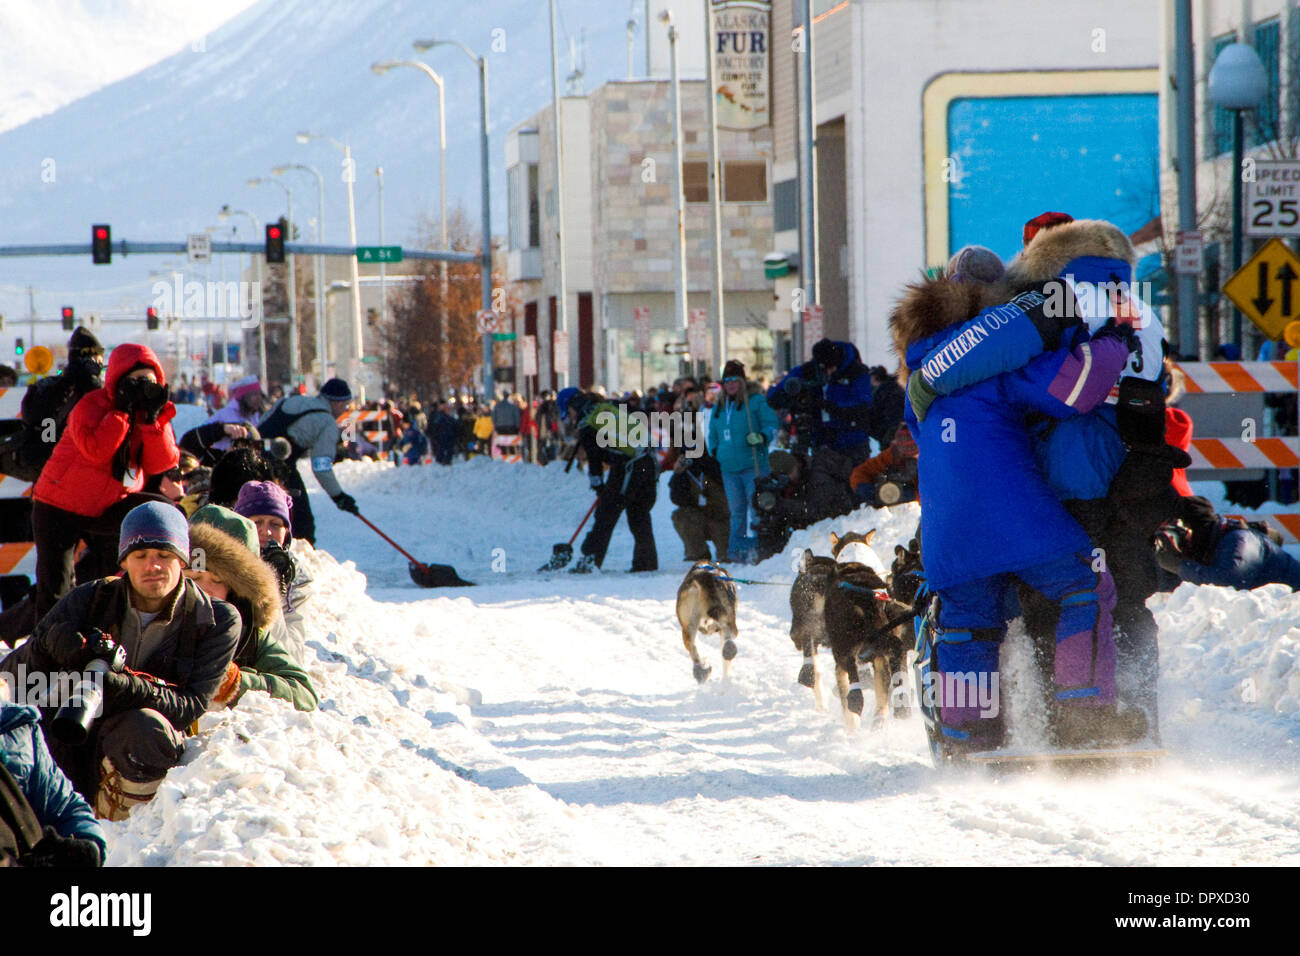 Mar 07, 2009 - Anchorage, Alaska, Stati Uniti d'America - Veterano Iditarod musher/vincitore MARTIN BUSER abbracciando la moglie come egli giù la testa 4a Avenue all inizio della xxxvii Iditarod Dogsled Race. (Credito Immagine: © Ron Levy/ZUMA Press) Foto Stock